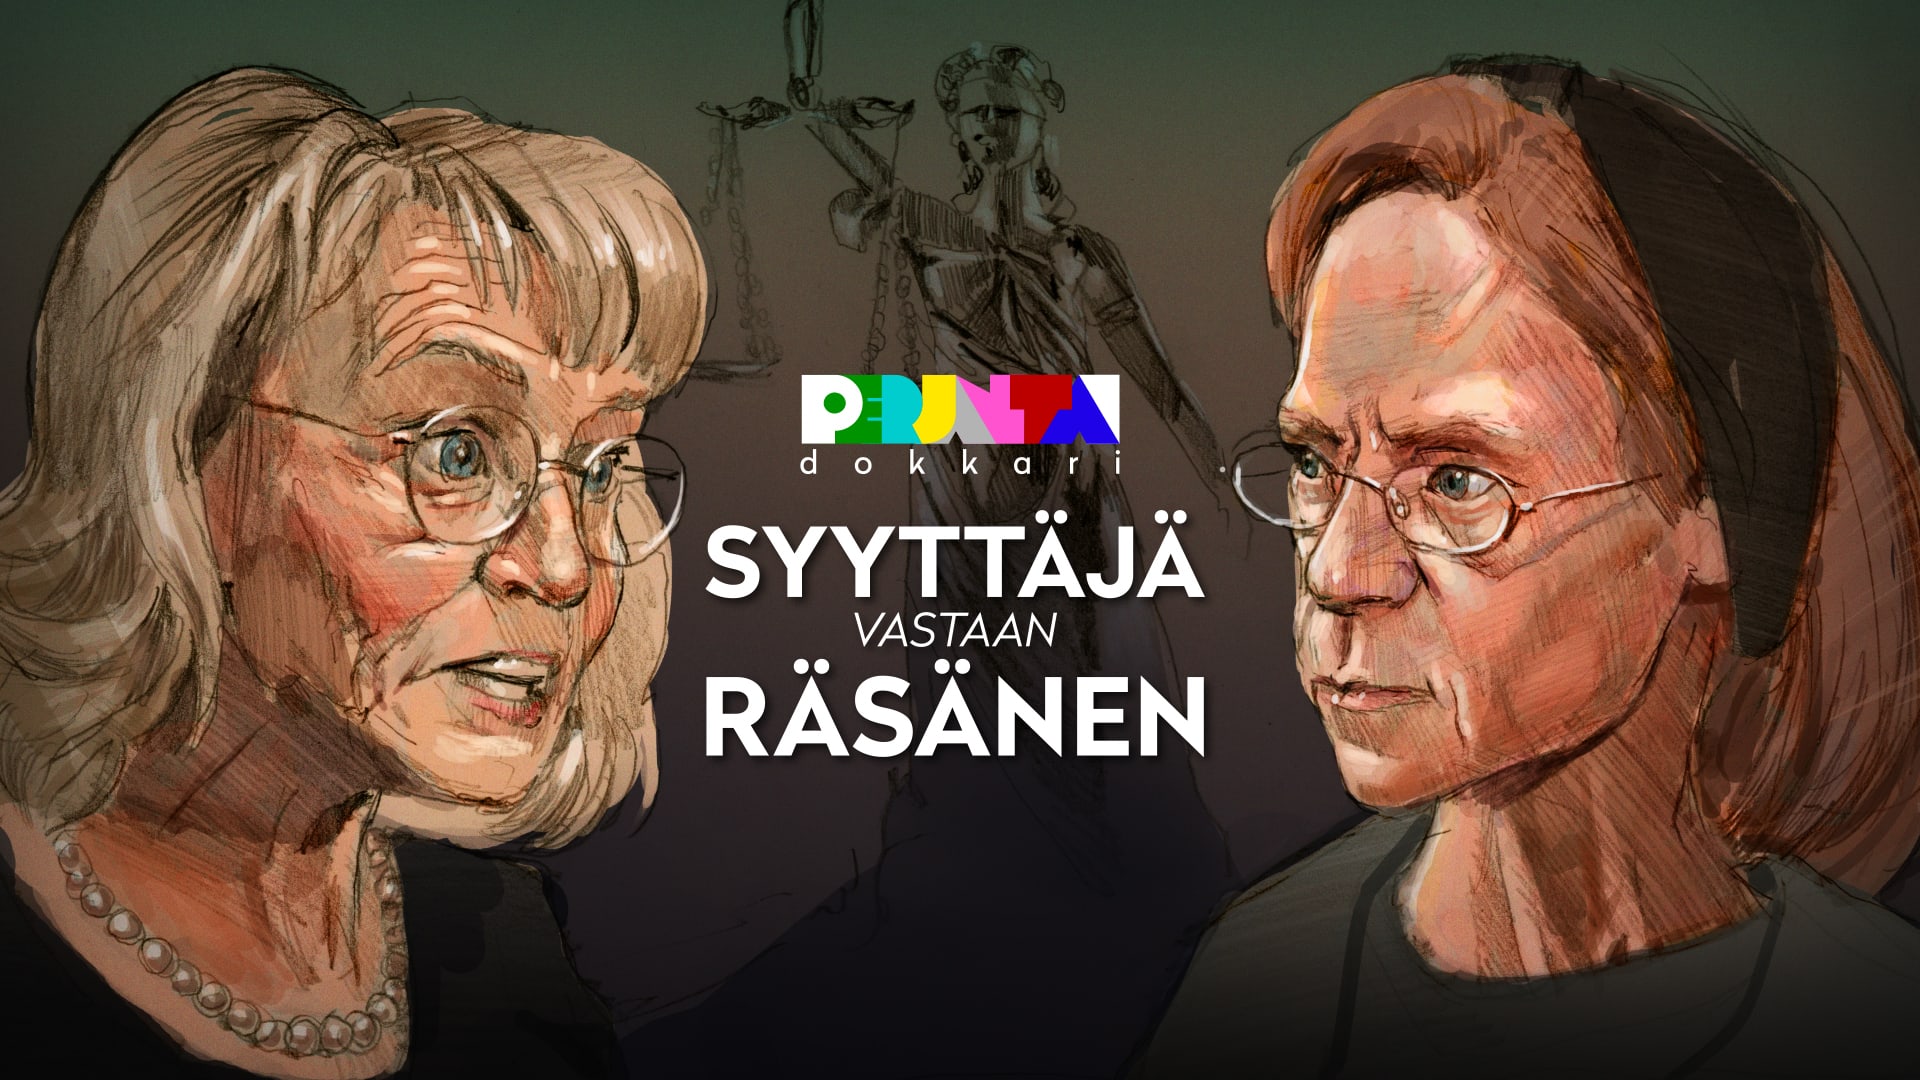 Syyttäjä vastaan Räsänen | Perjantai-dokkari | Yle Areena